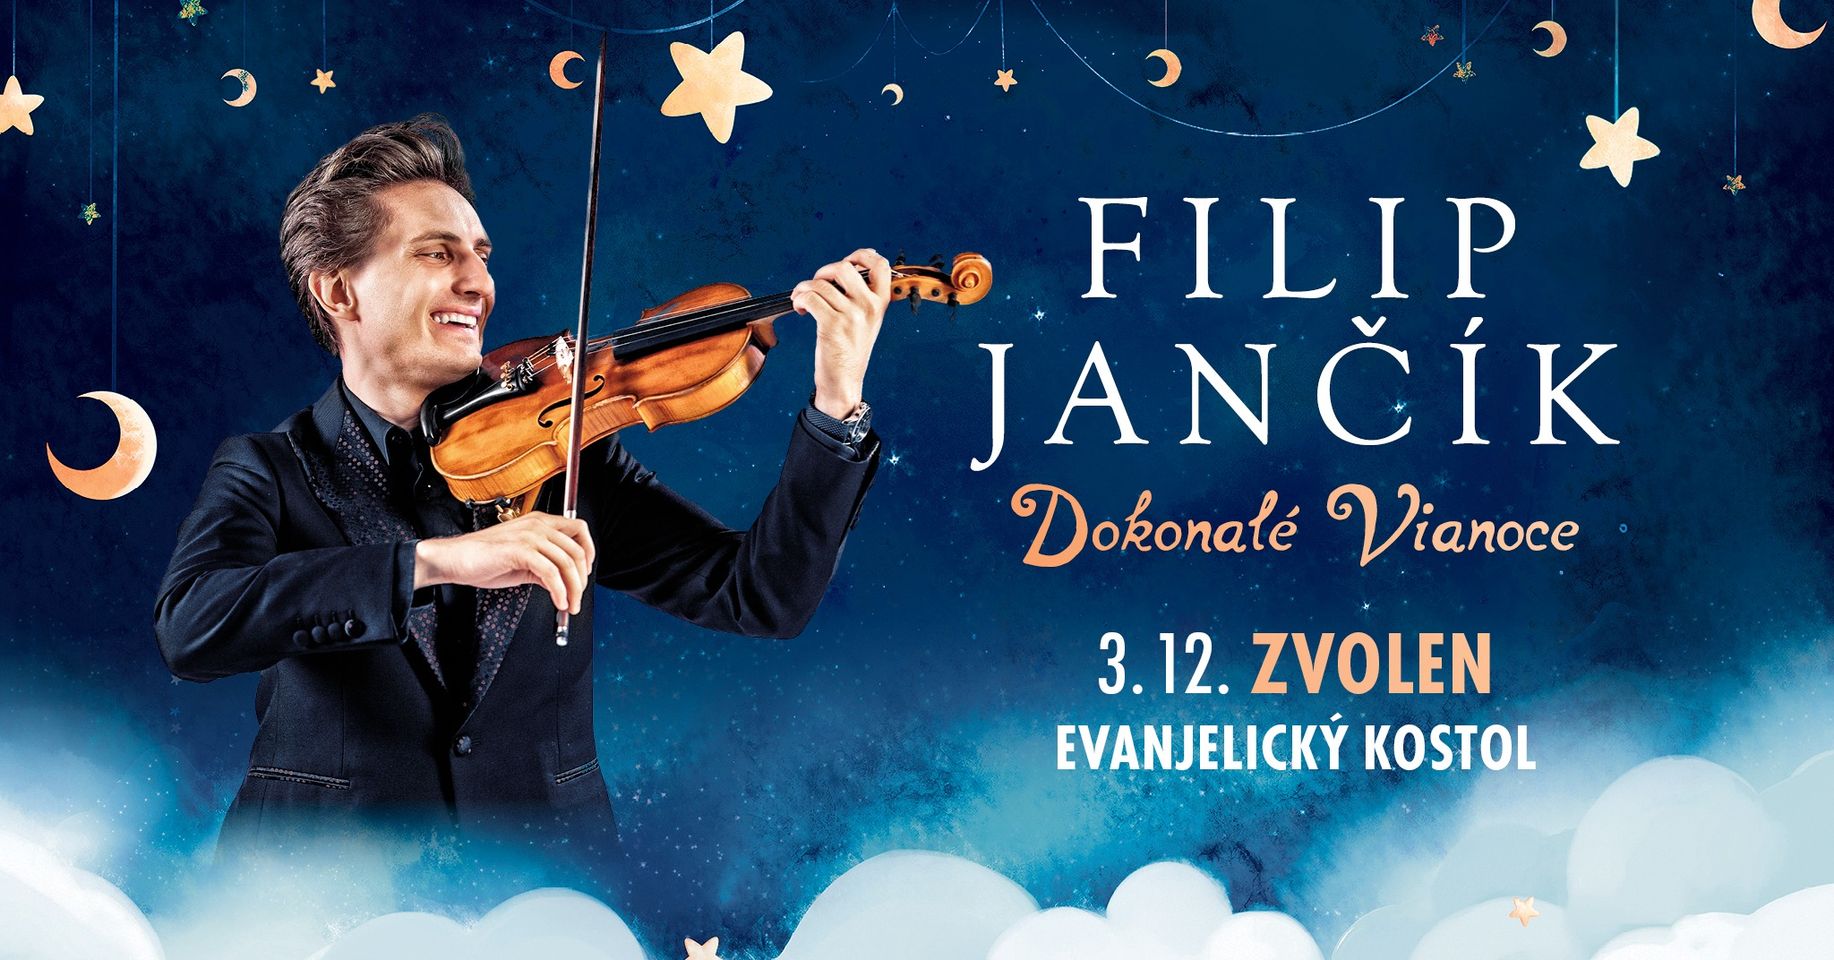 Filip Jančík | Koncert - Dokonalé Vianoce |  Evanjelický kostol sv.Trojice